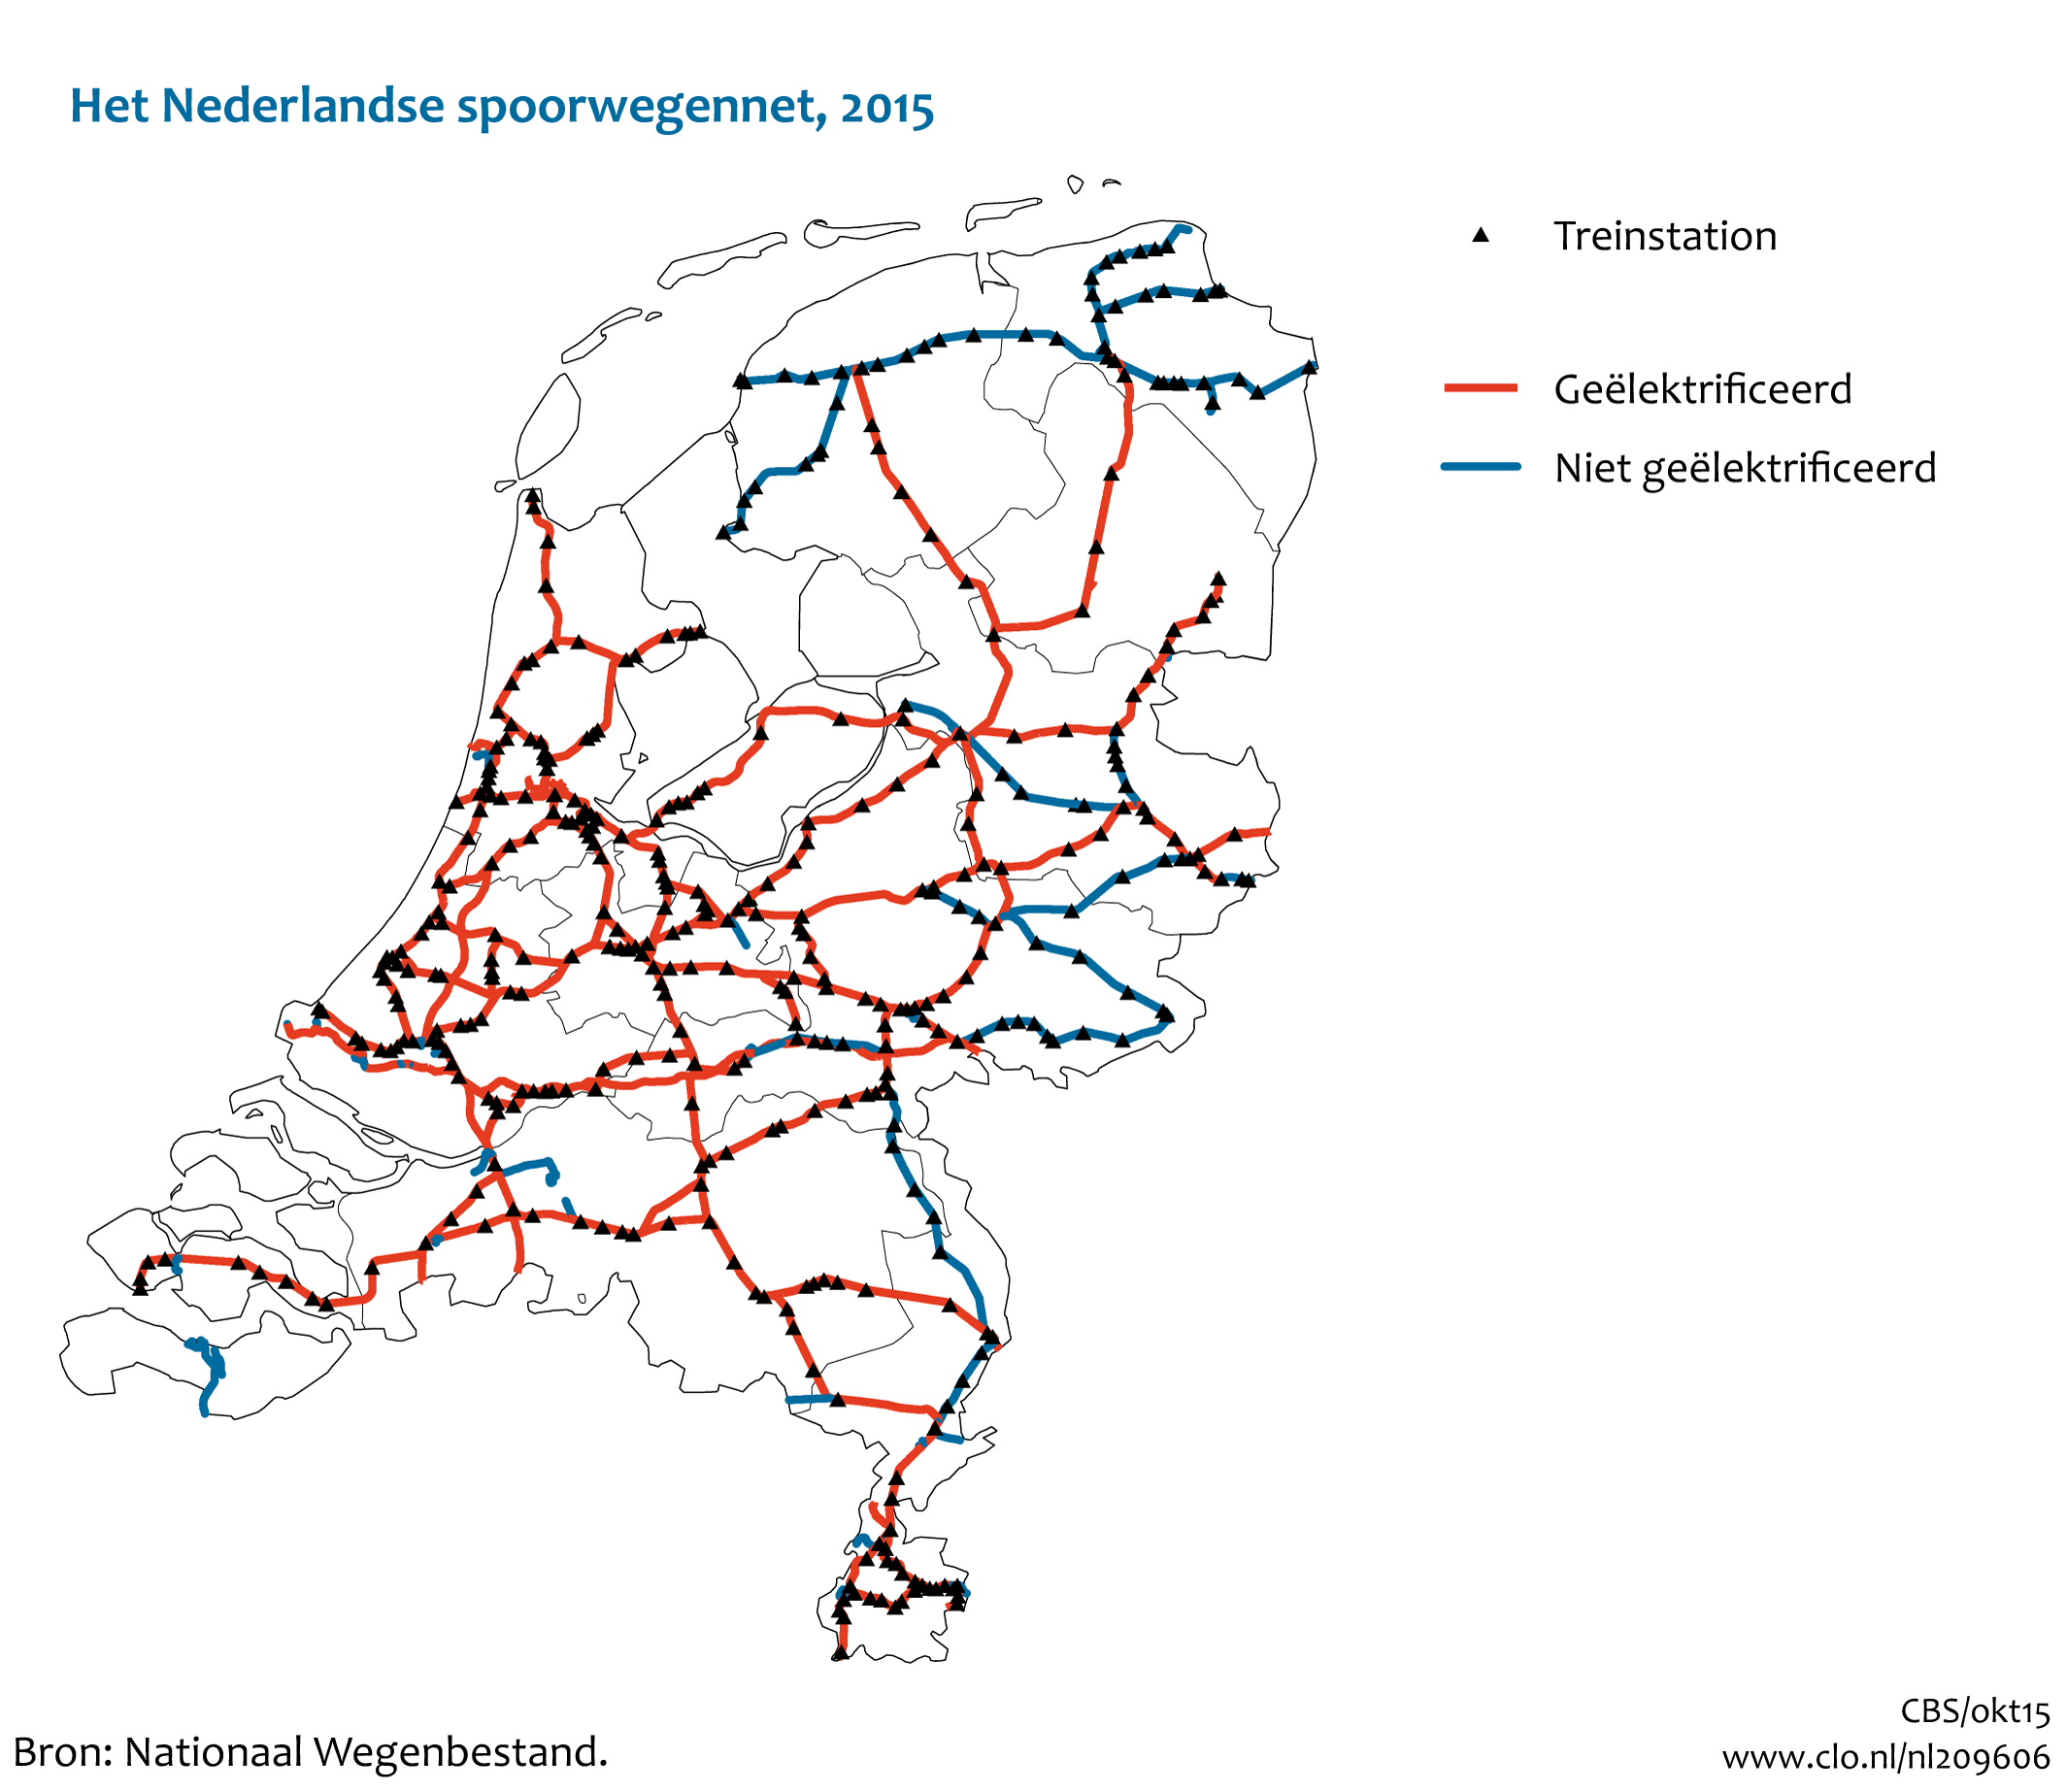 Figuur  Het Nederlandse spoorwegennet, 2015. In de rest van de tekst wordt deze figuur uitgebreider uitgelegd.